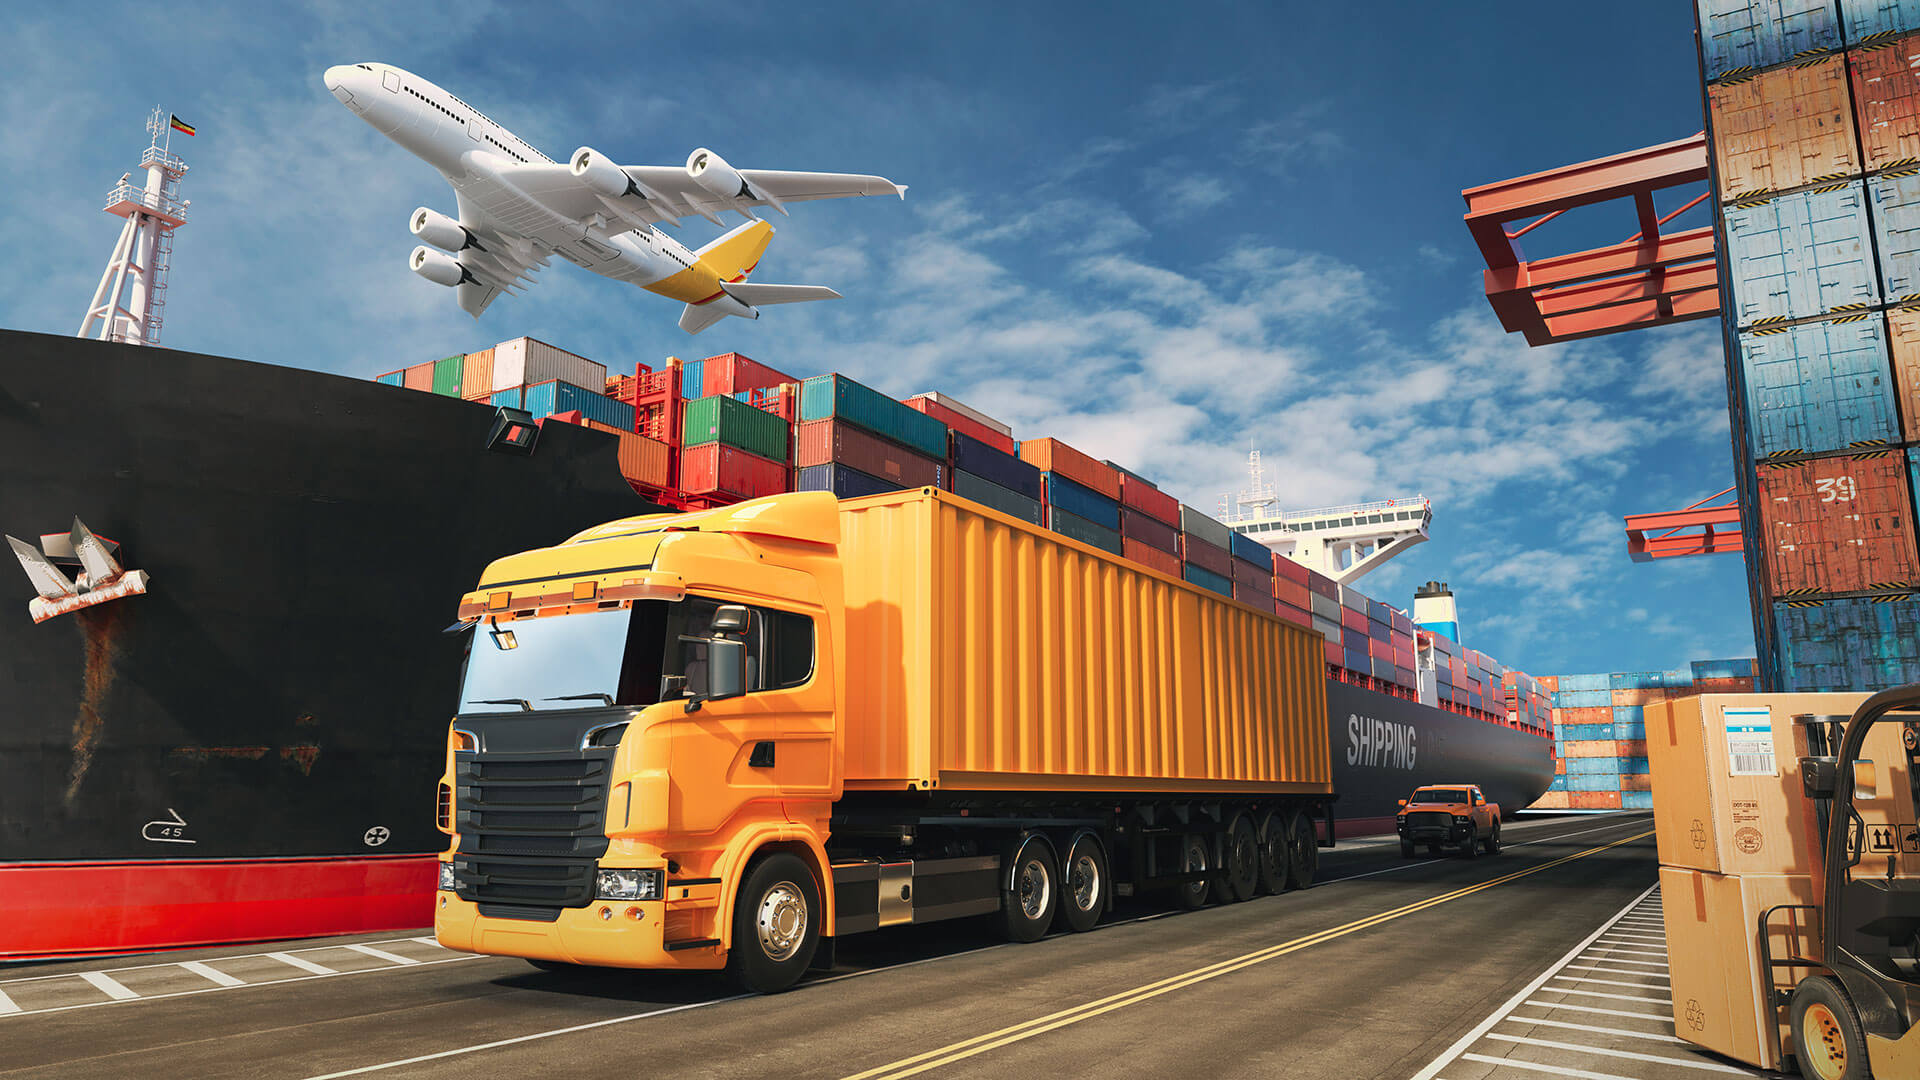 TPHCM hợp tác, liên kết vùng để phát triển logistics - Smartlink